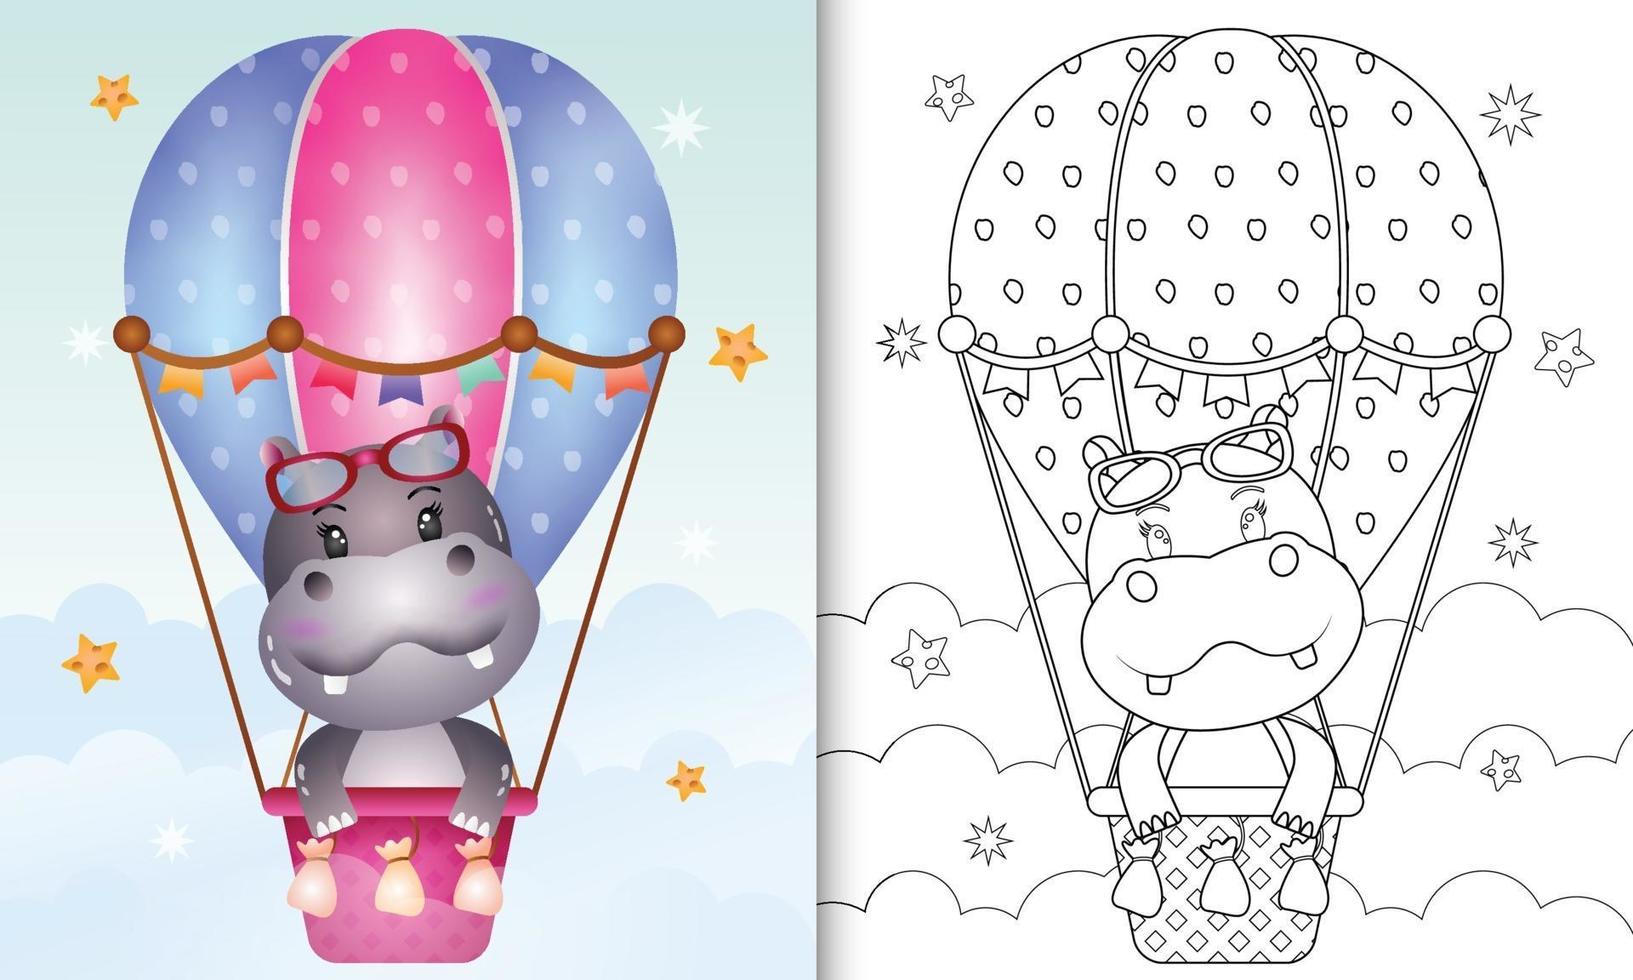 kleurboek voor kinderen met een schattige nijlpaard op heteluchtballon vector